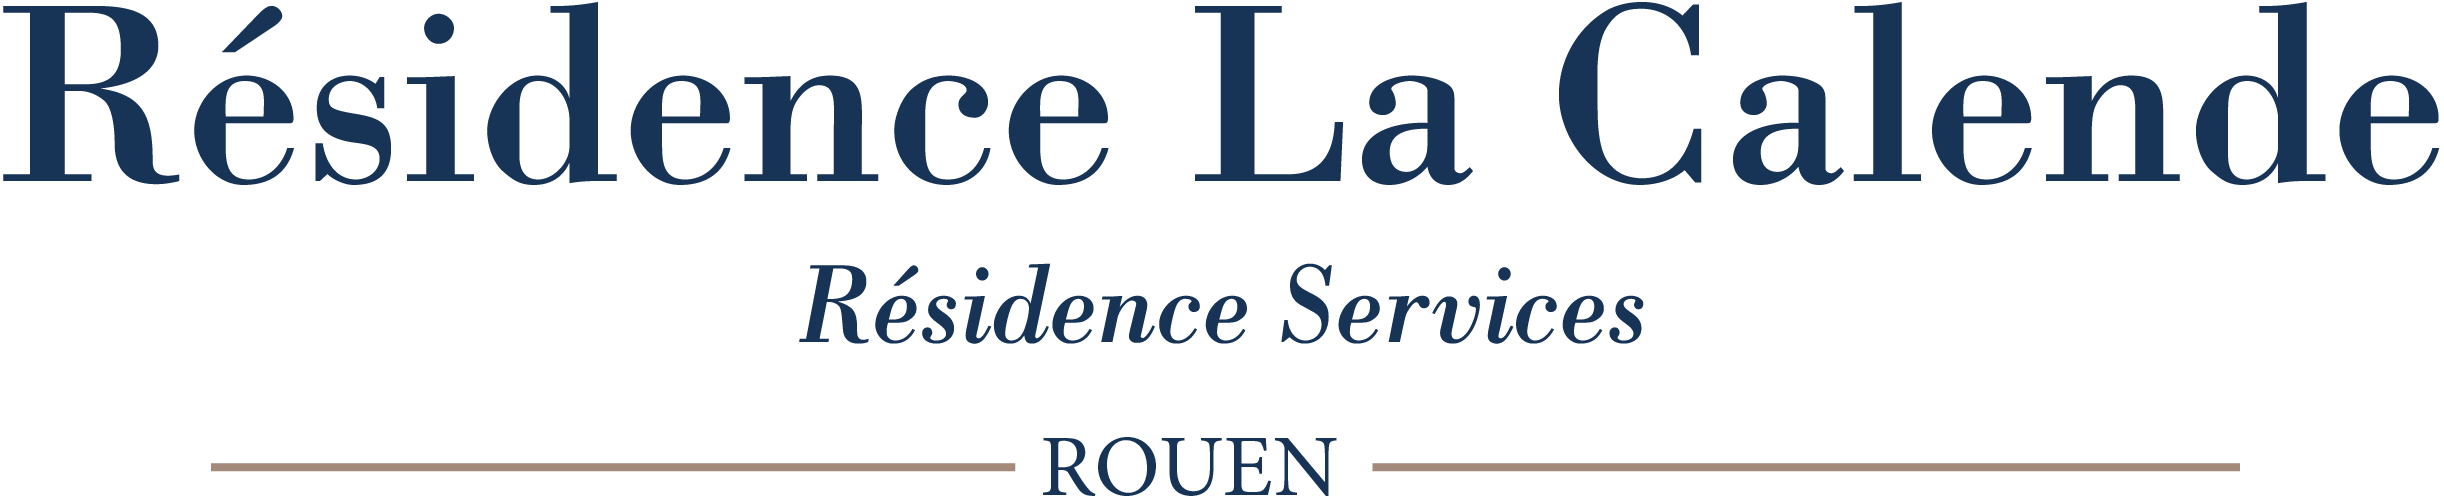 Résidence Services La Calende - Rouen - 